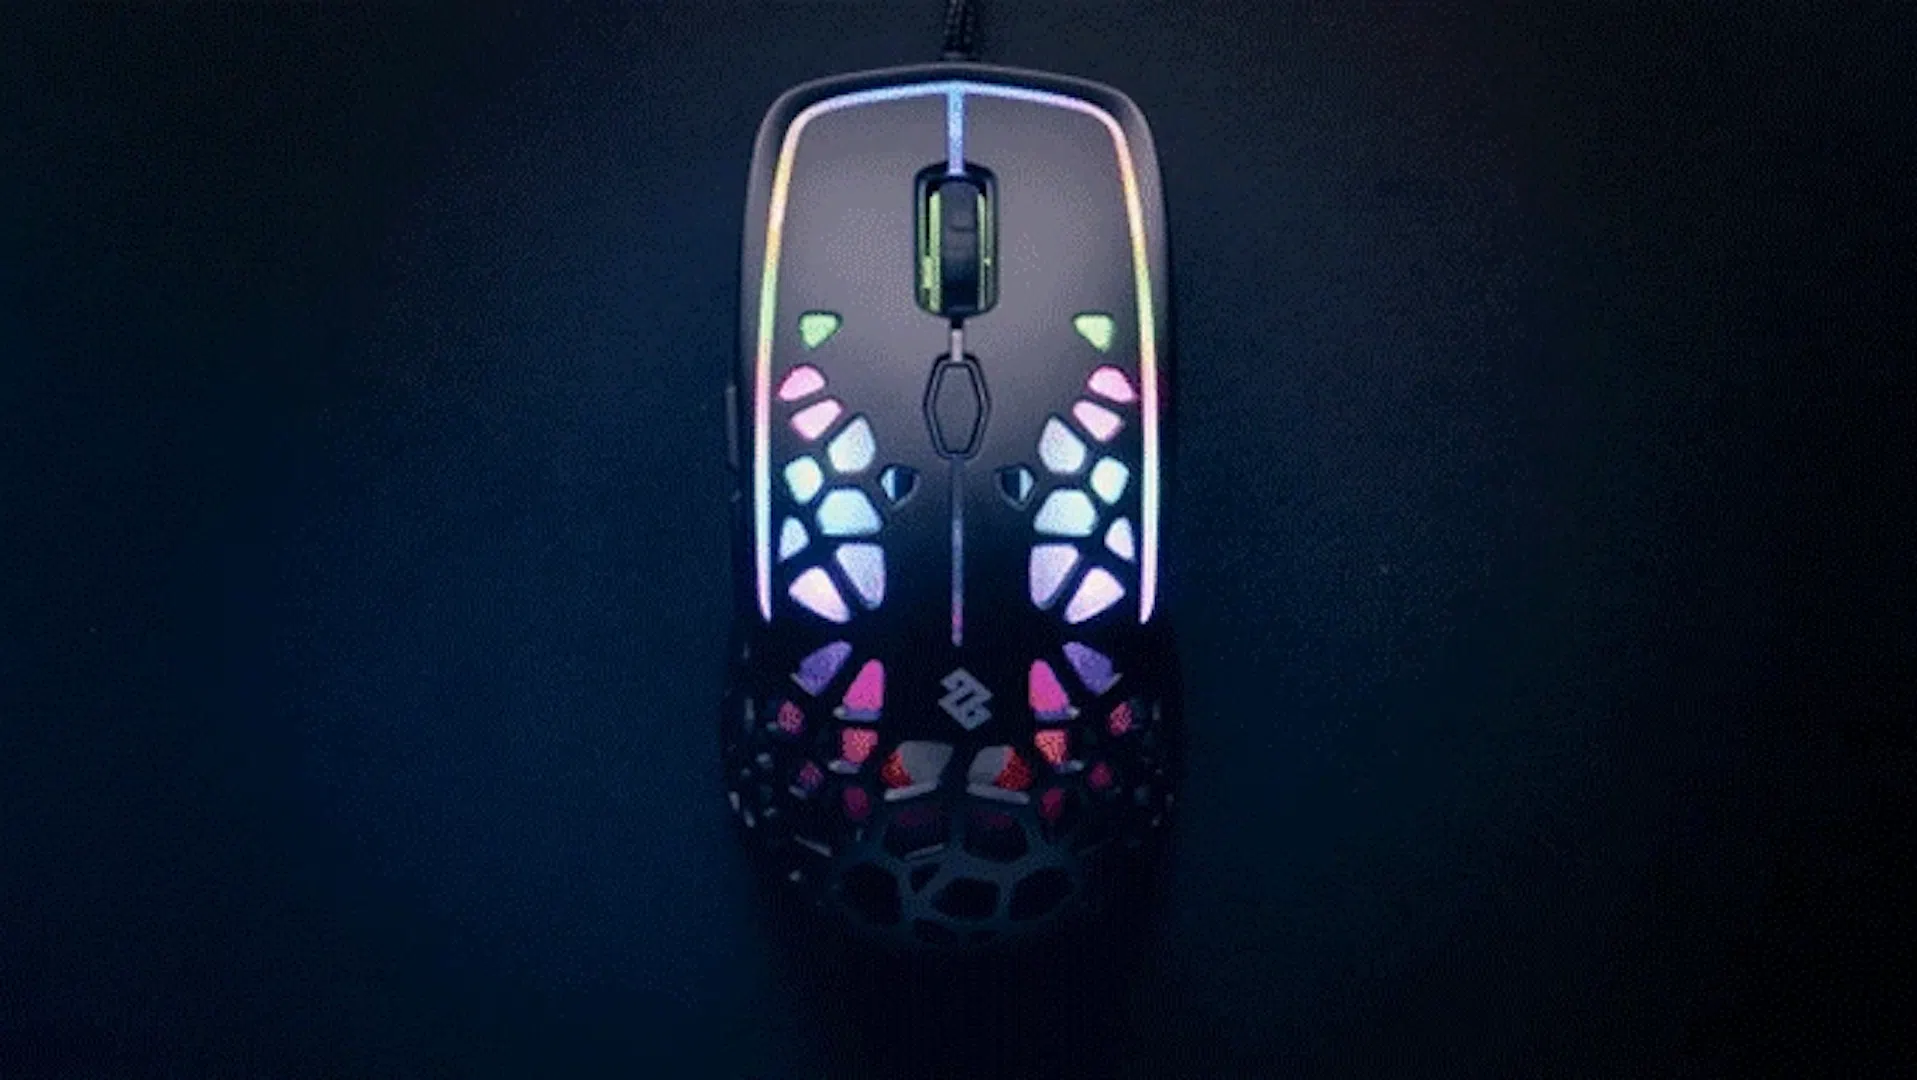 Eine RGB Gaming Maus mit pastellfarbener Atmen-Effekt Beleuchtung. | Credit: Kickstarter.